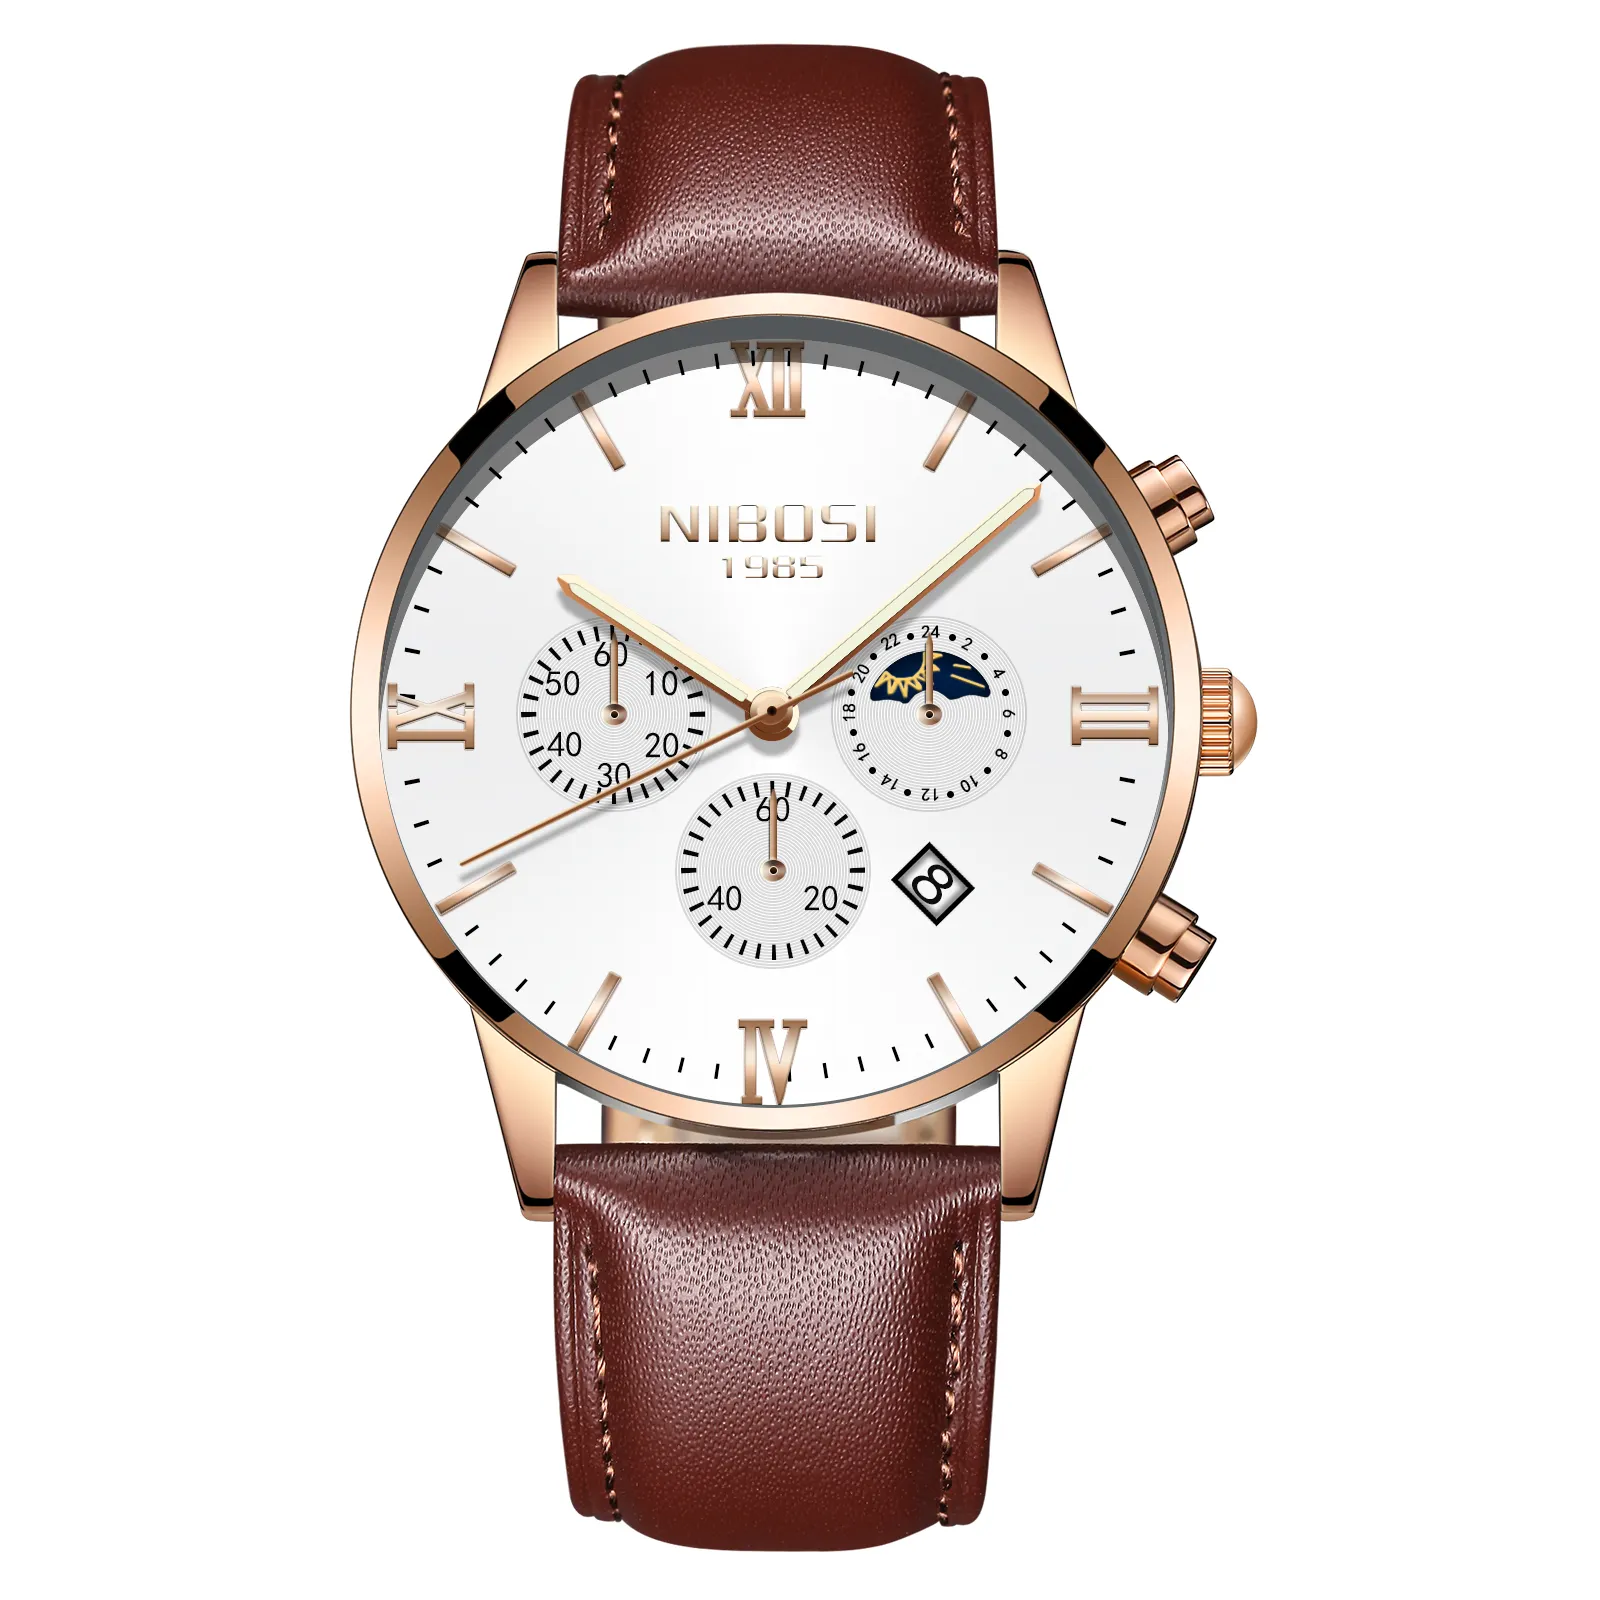 Relógio de pulso com mostrador branco, relógio de pulso personalizado com pulseira de couro marrom